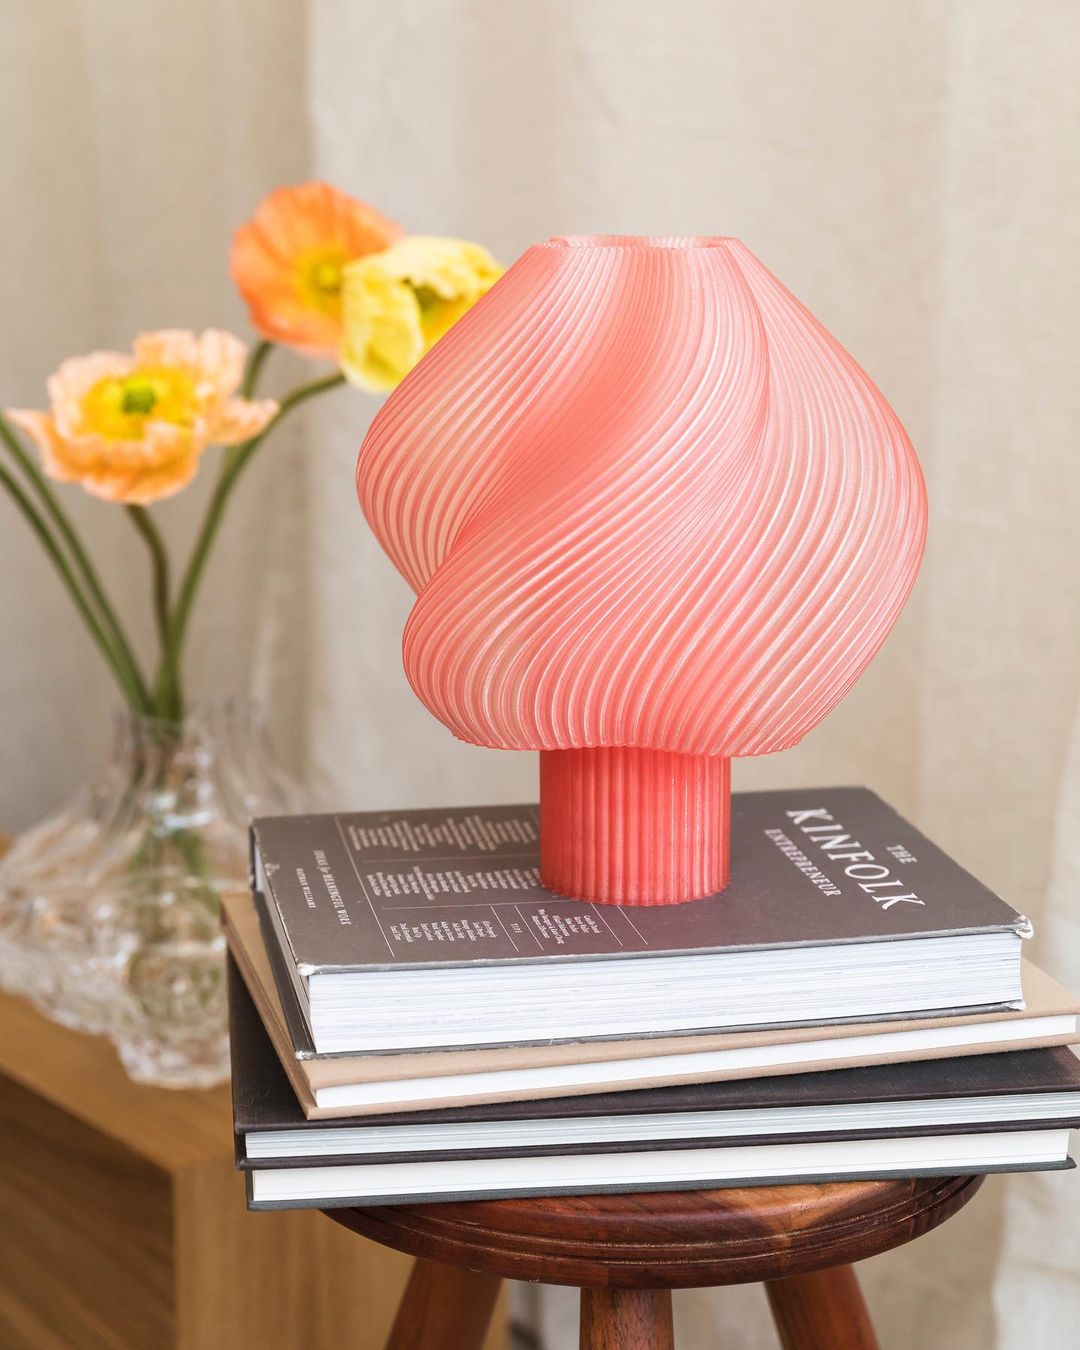 Ove održive 3D printane lampe pobjednice su ovogodišnje skandinavske nagrade za dizajn